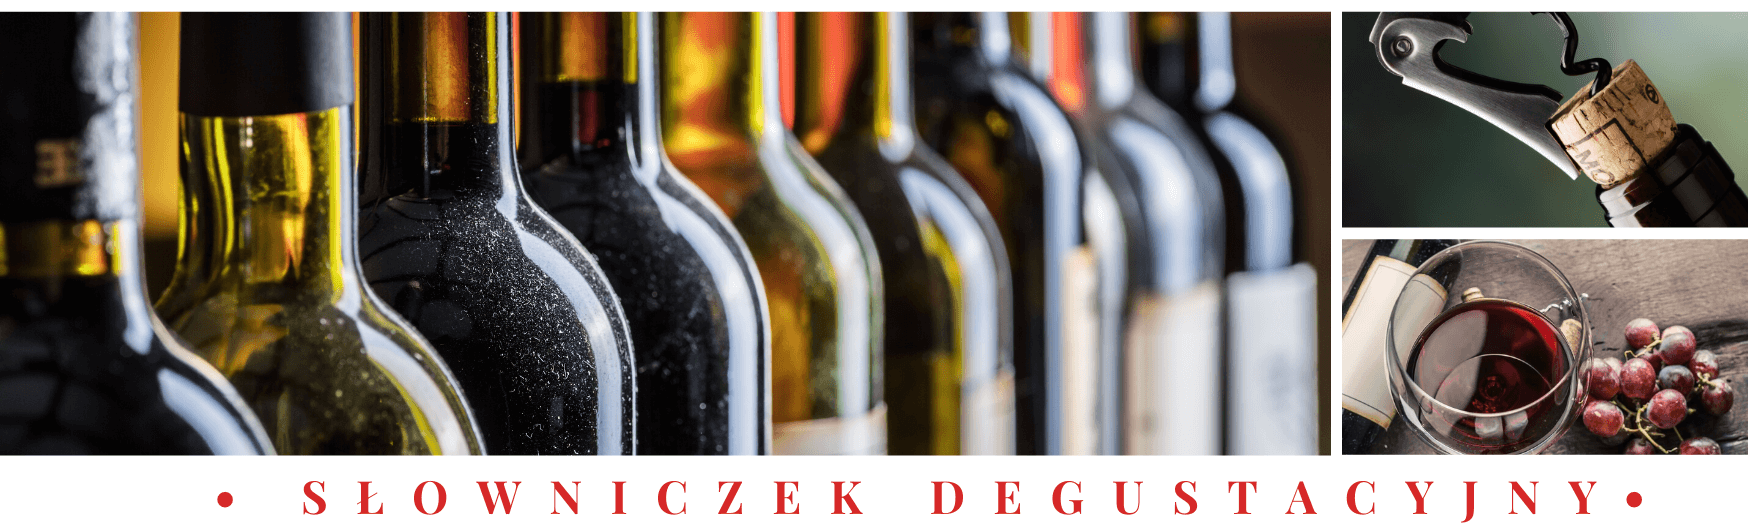 Degustacja wina - Terminy degustacyjne i słowniczek